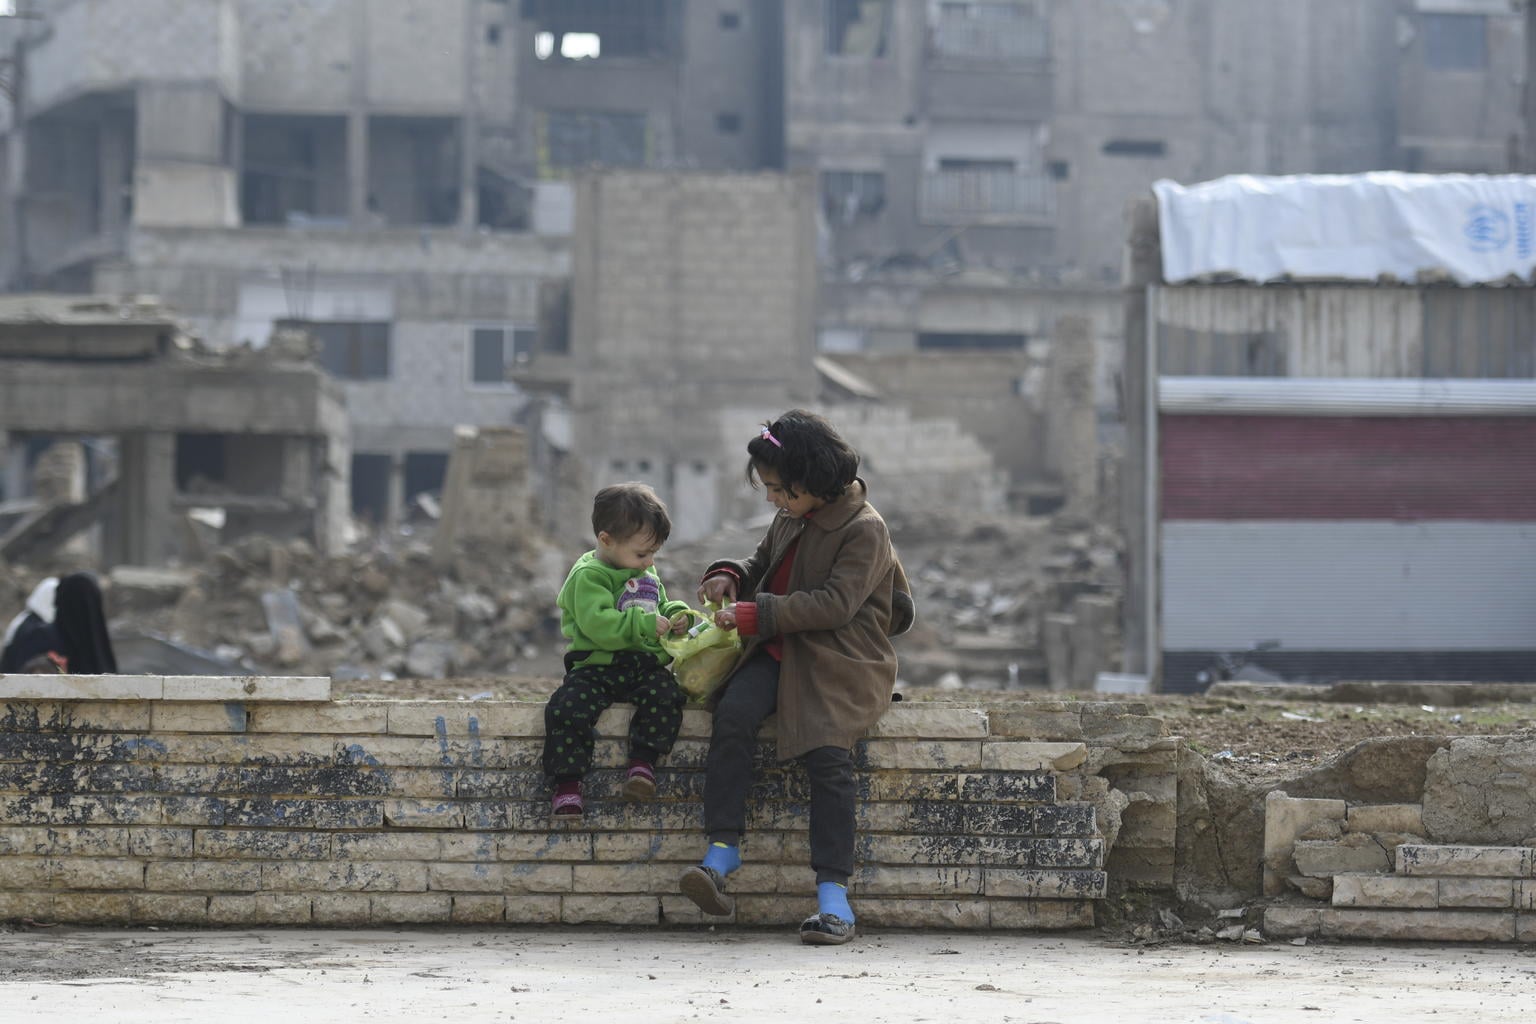 シリア危機 子どもの半数 平和を知らず 町に戻った家族に不発弾の脅威